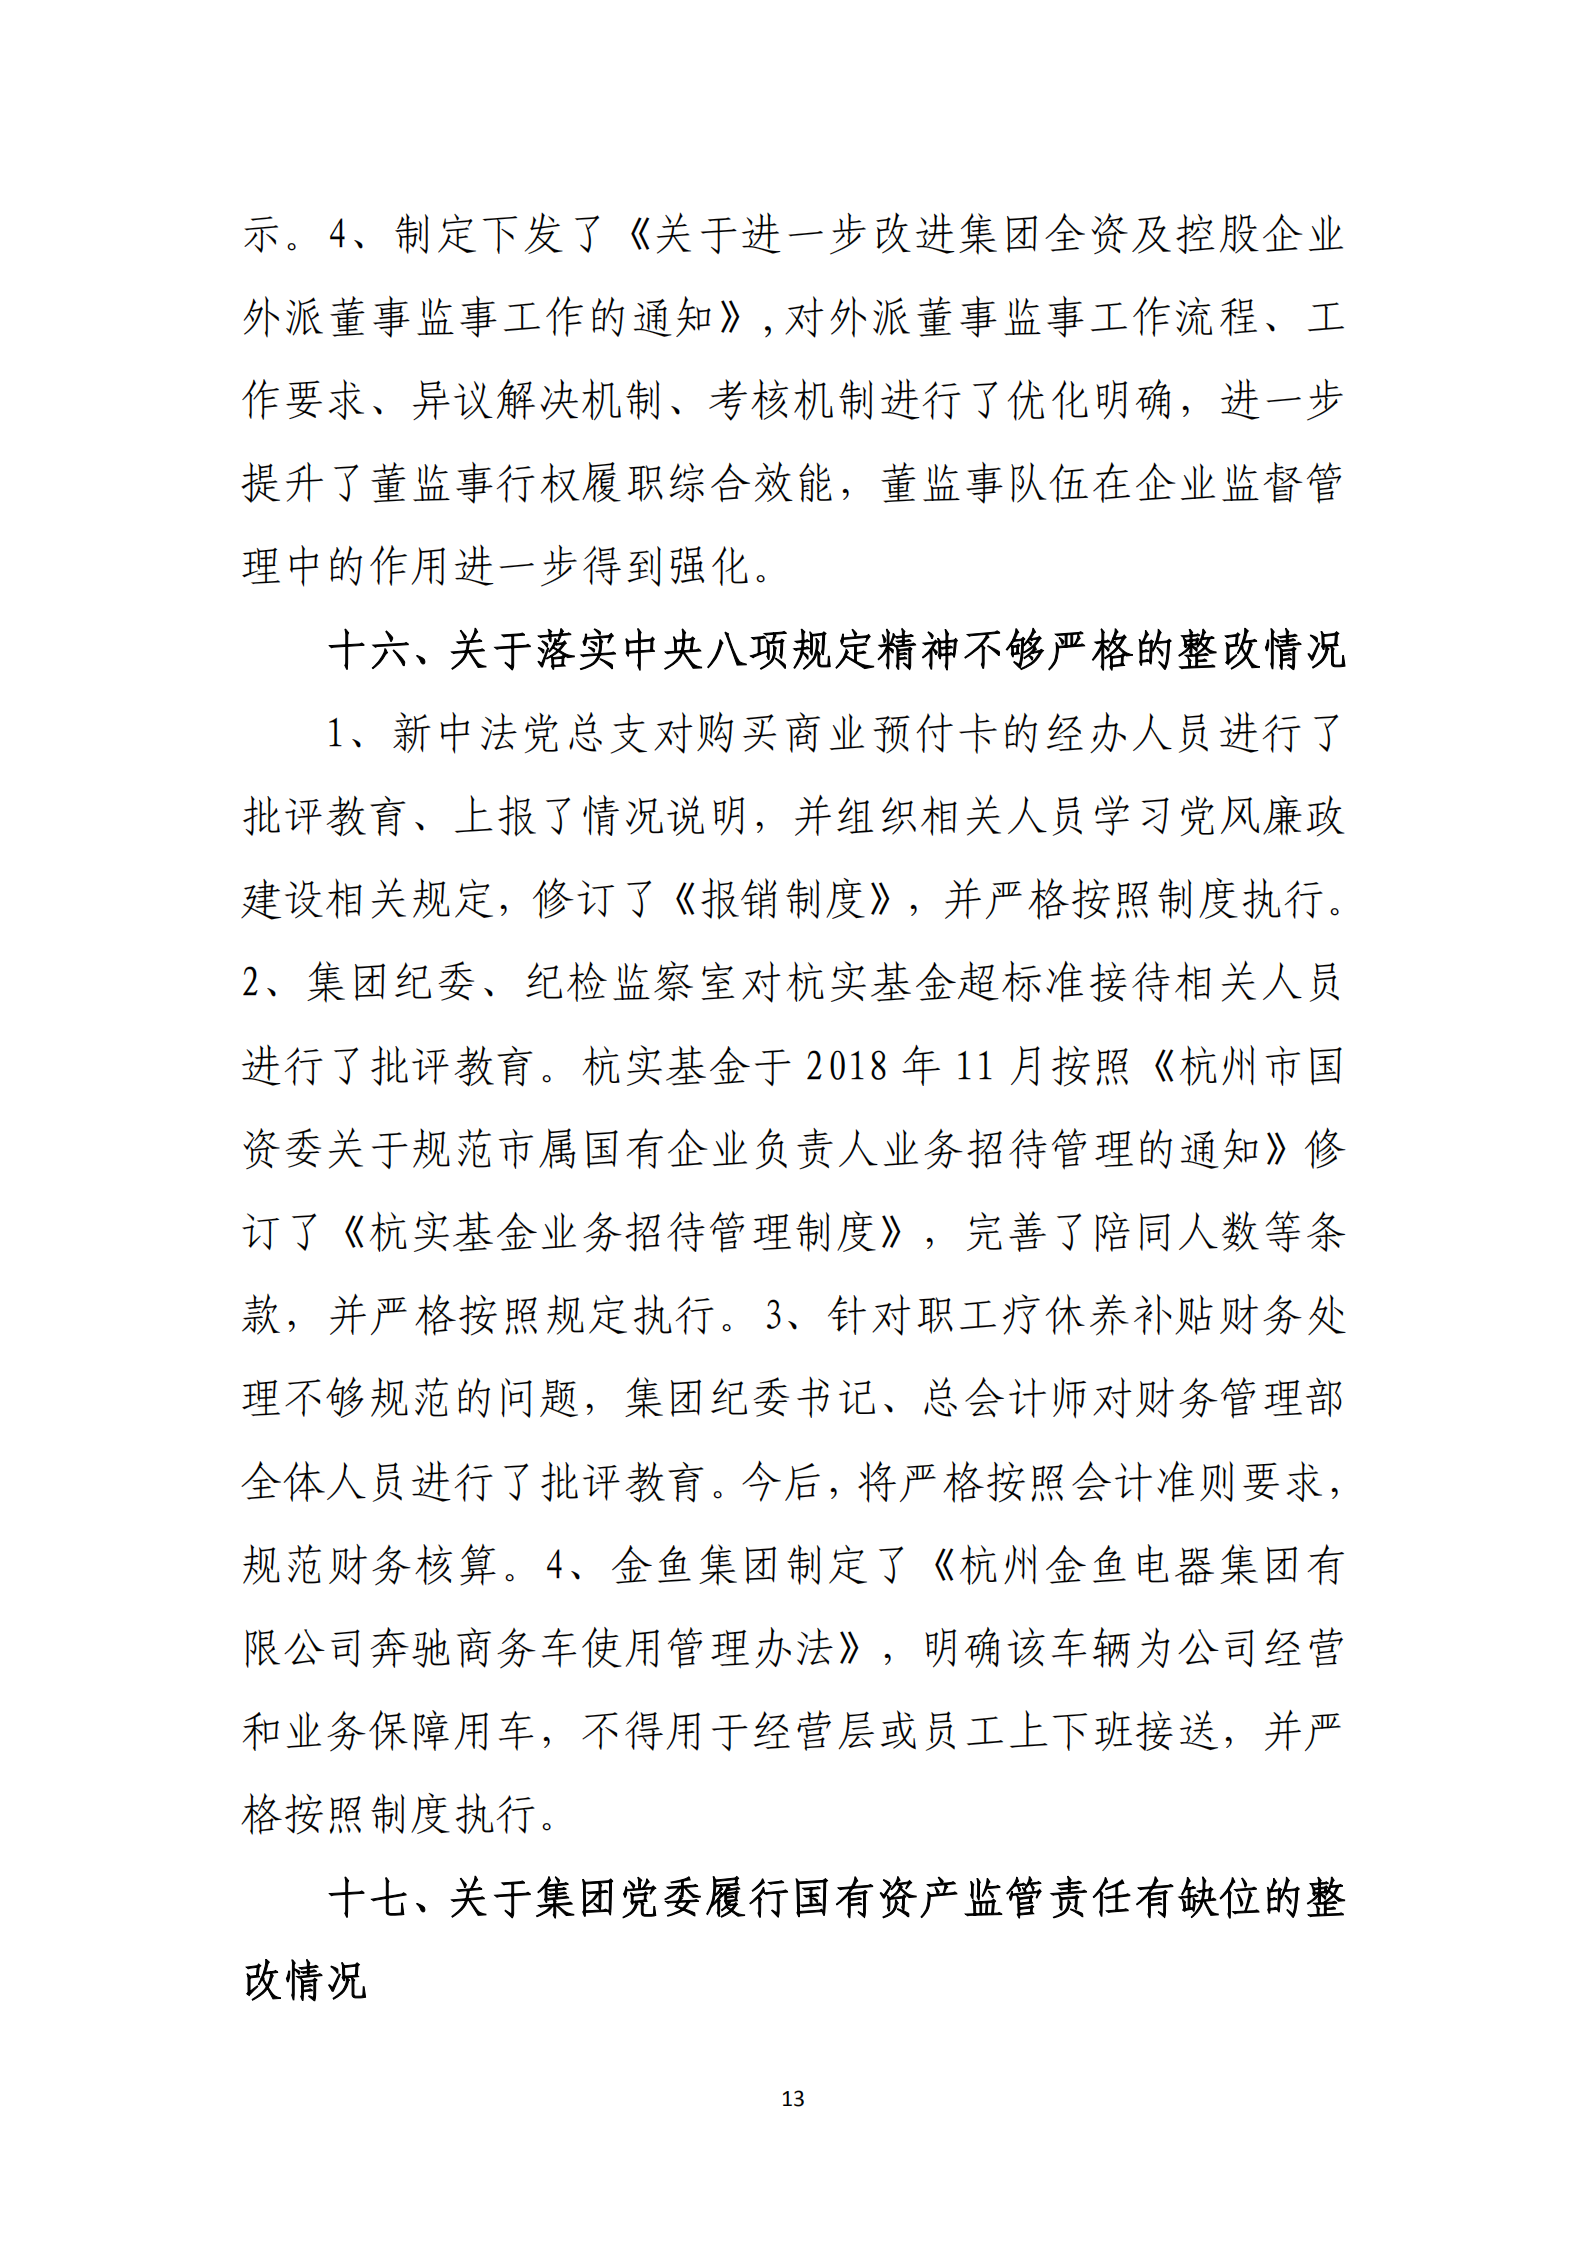 大阳城集团娱乐游戏党委关于巡察整改情况的通报_12.png